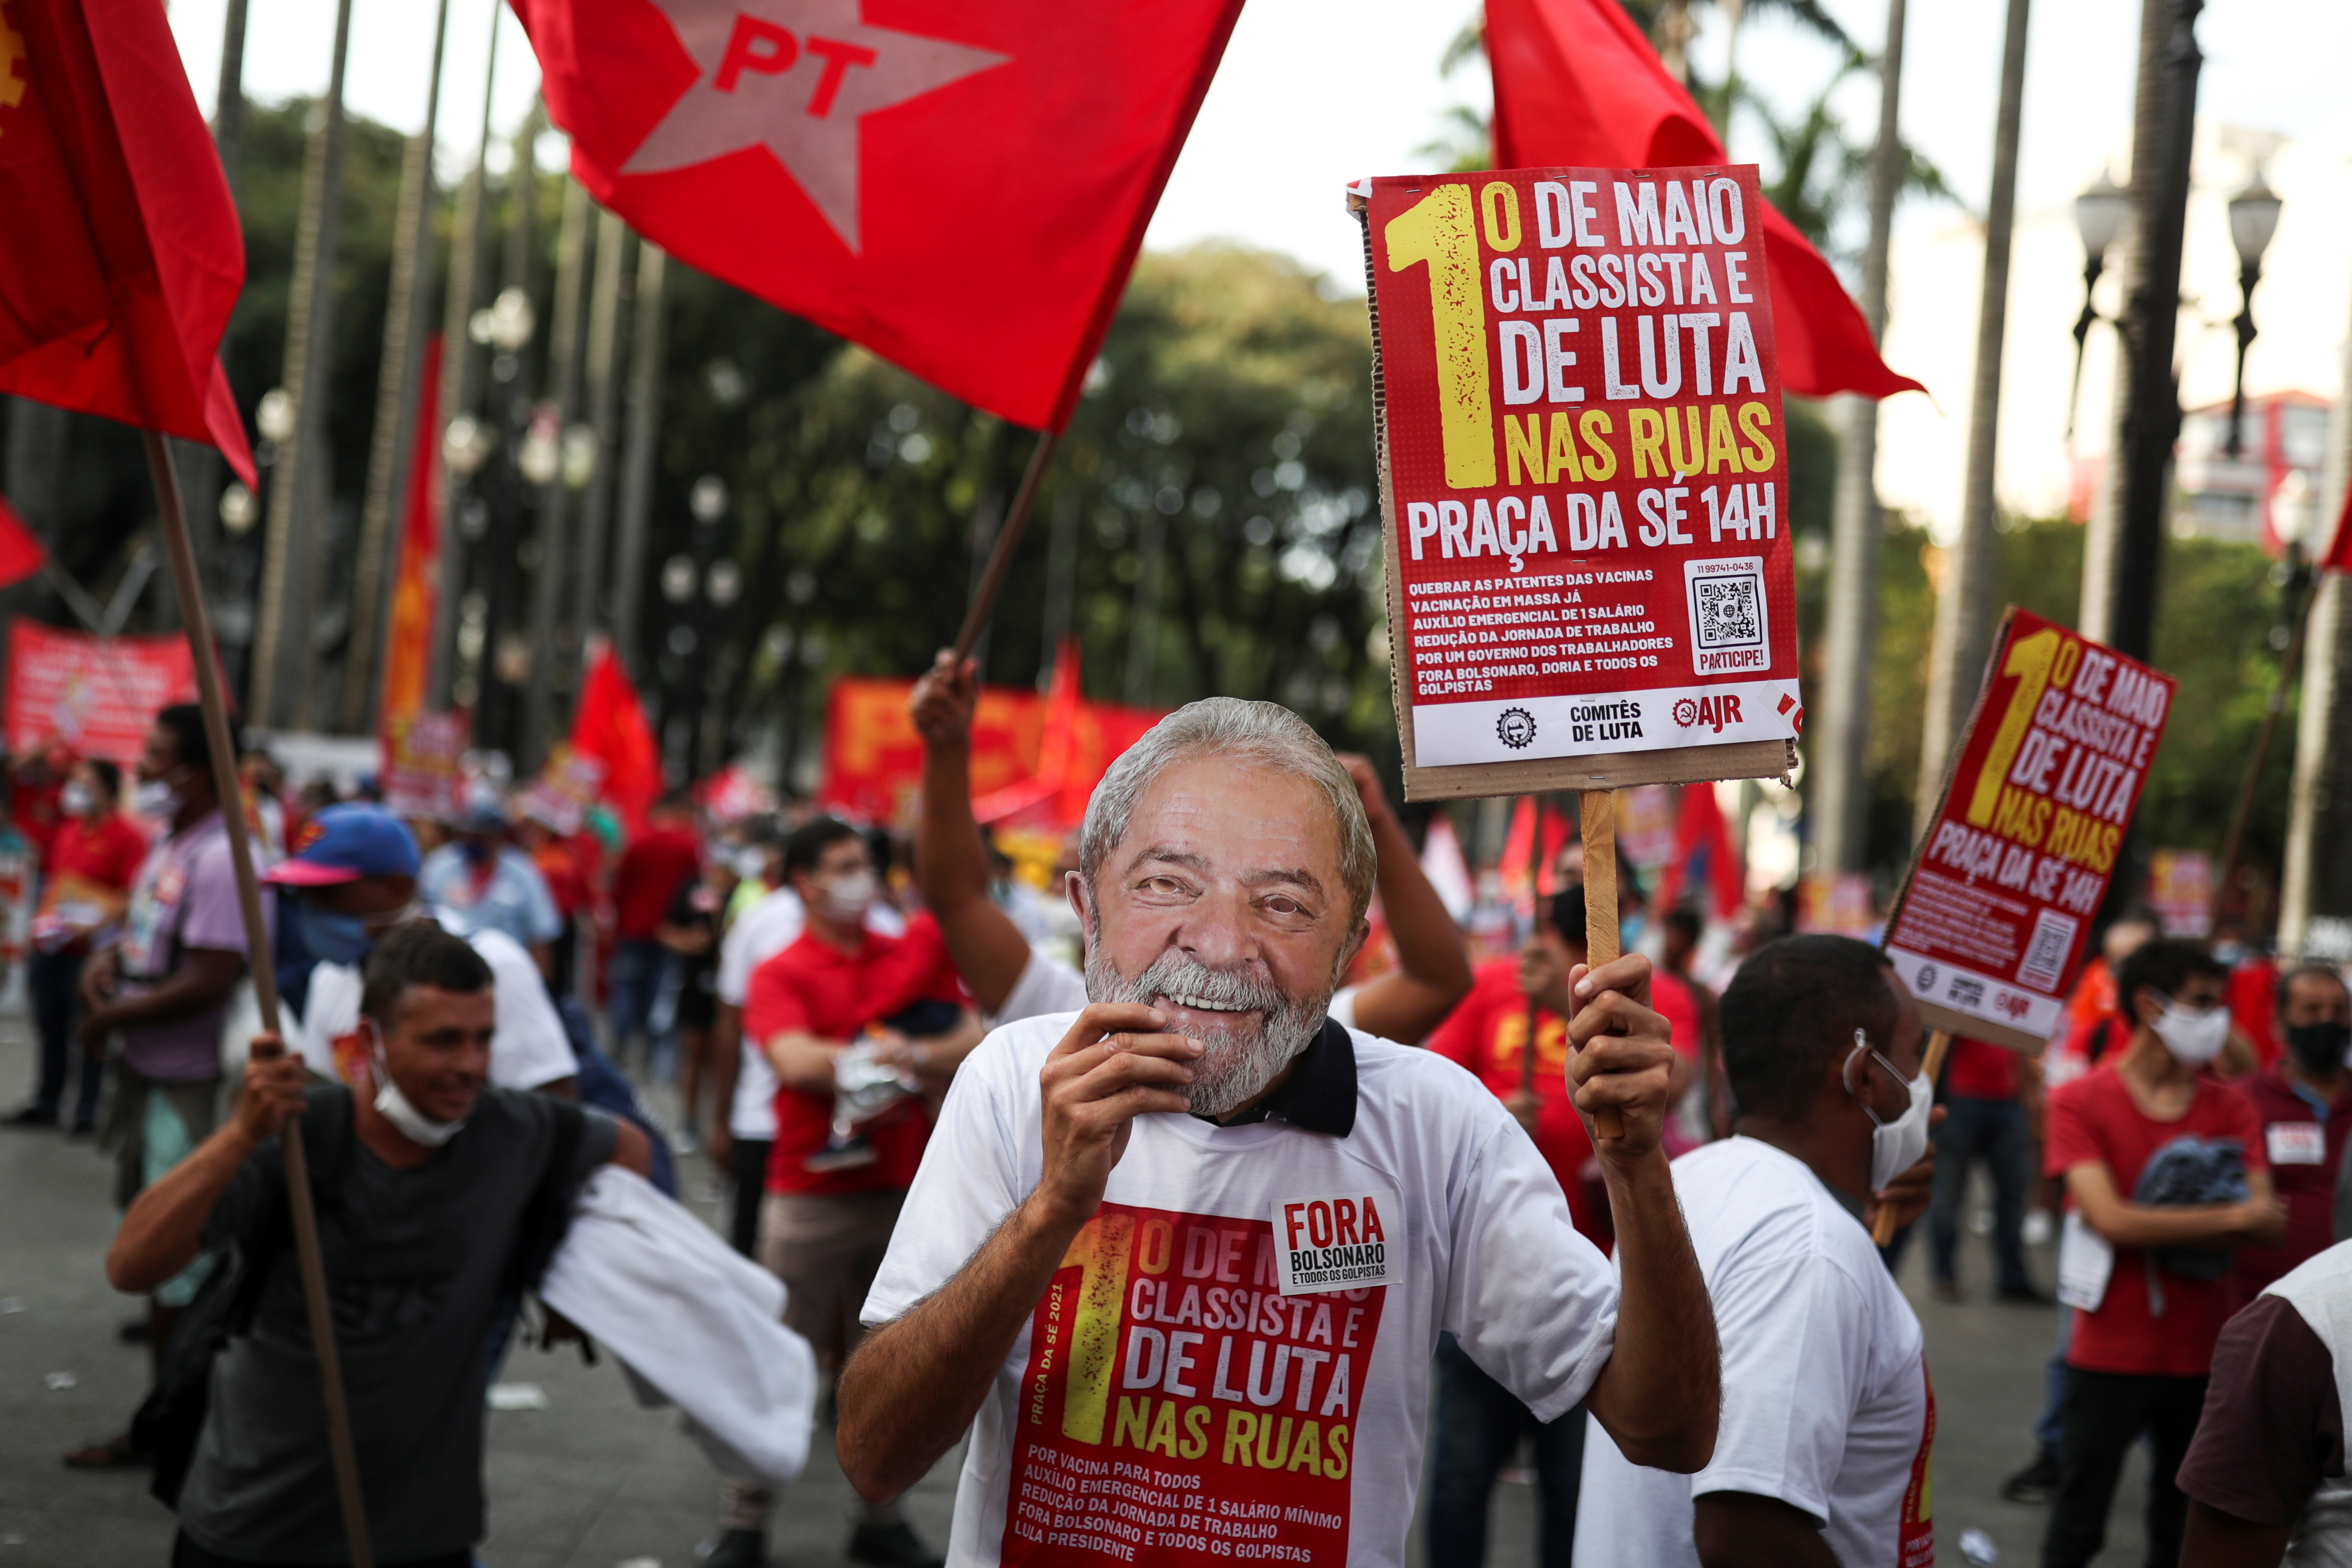 Un hombre sostiene una careta de Luiz Inacio Lula da Silva, la principal figura del PT y potencial contrincante de Bolsonaro en los próximos comicios. REUTERS/Amanda Perobelli